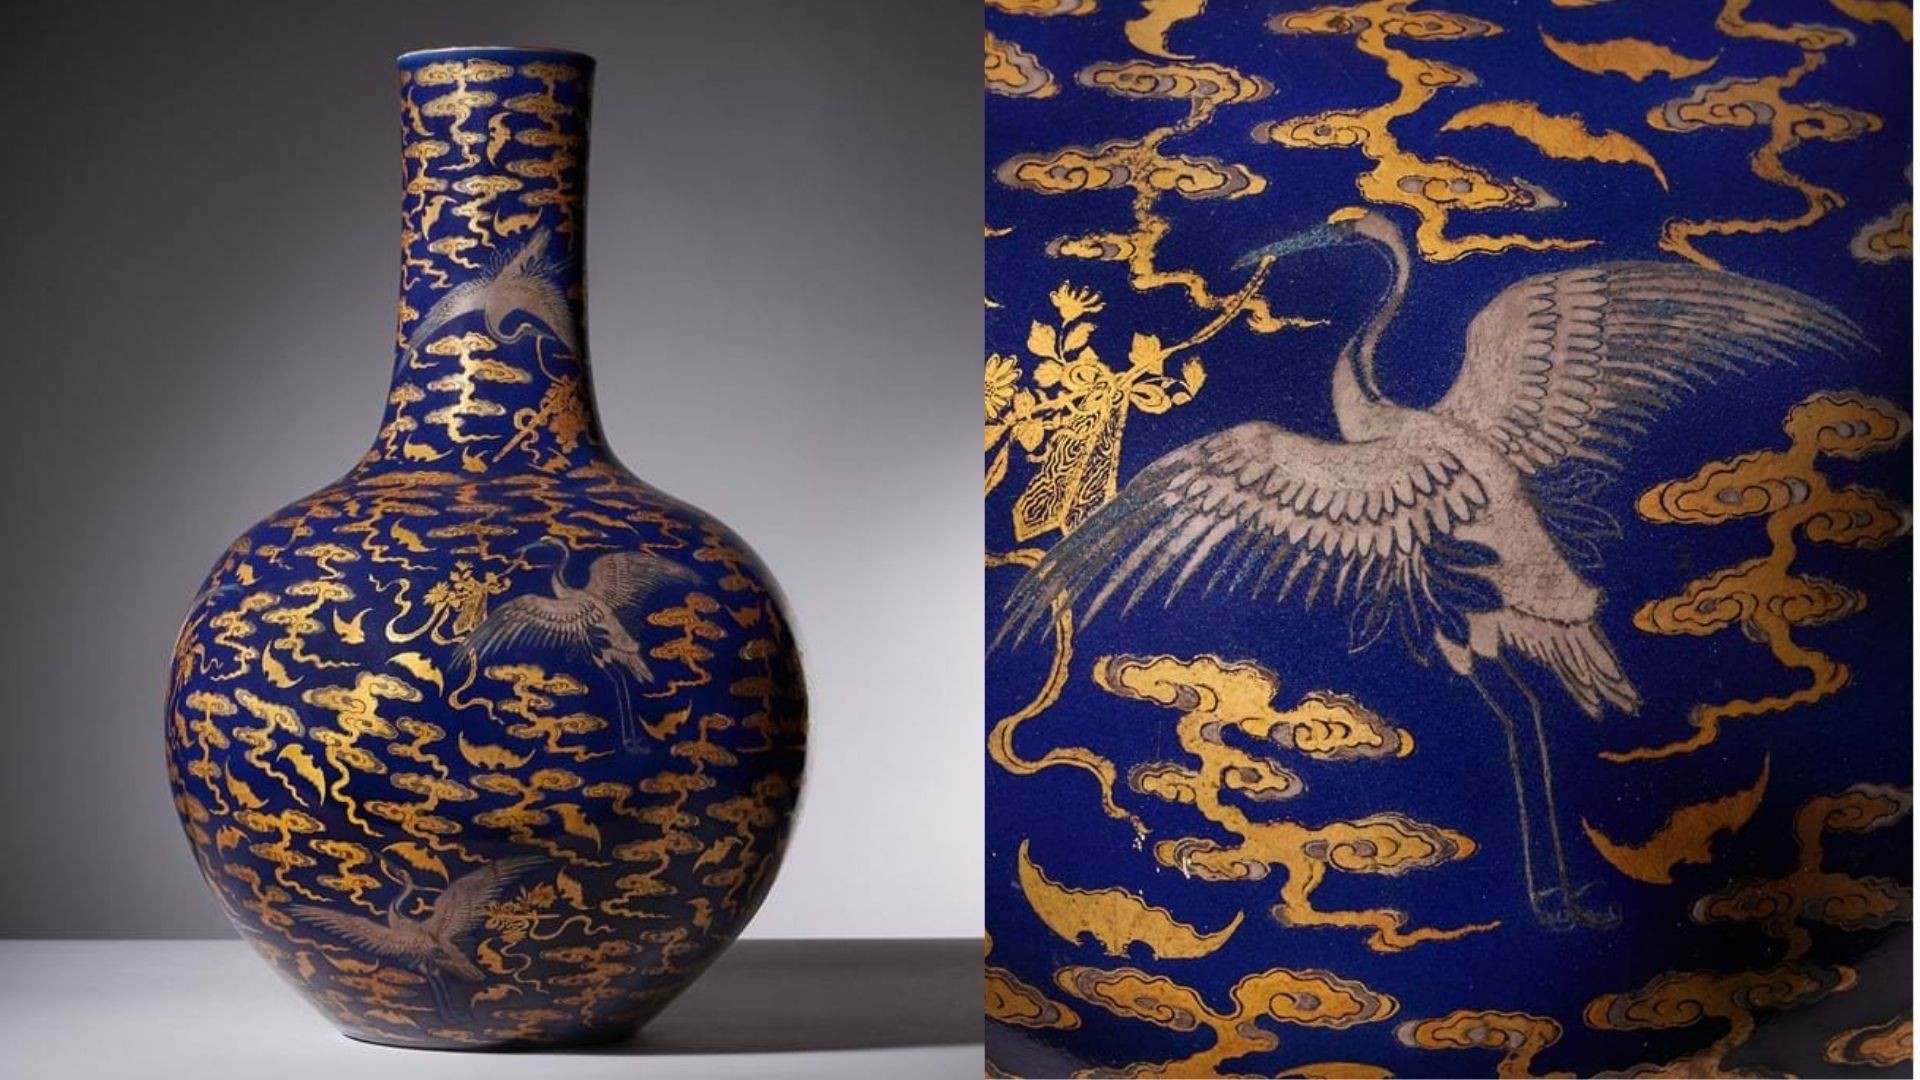 Vaso chinês raro do século 18 foi criado para a corte do imperador Qianlong (Foto: Dreweatts)